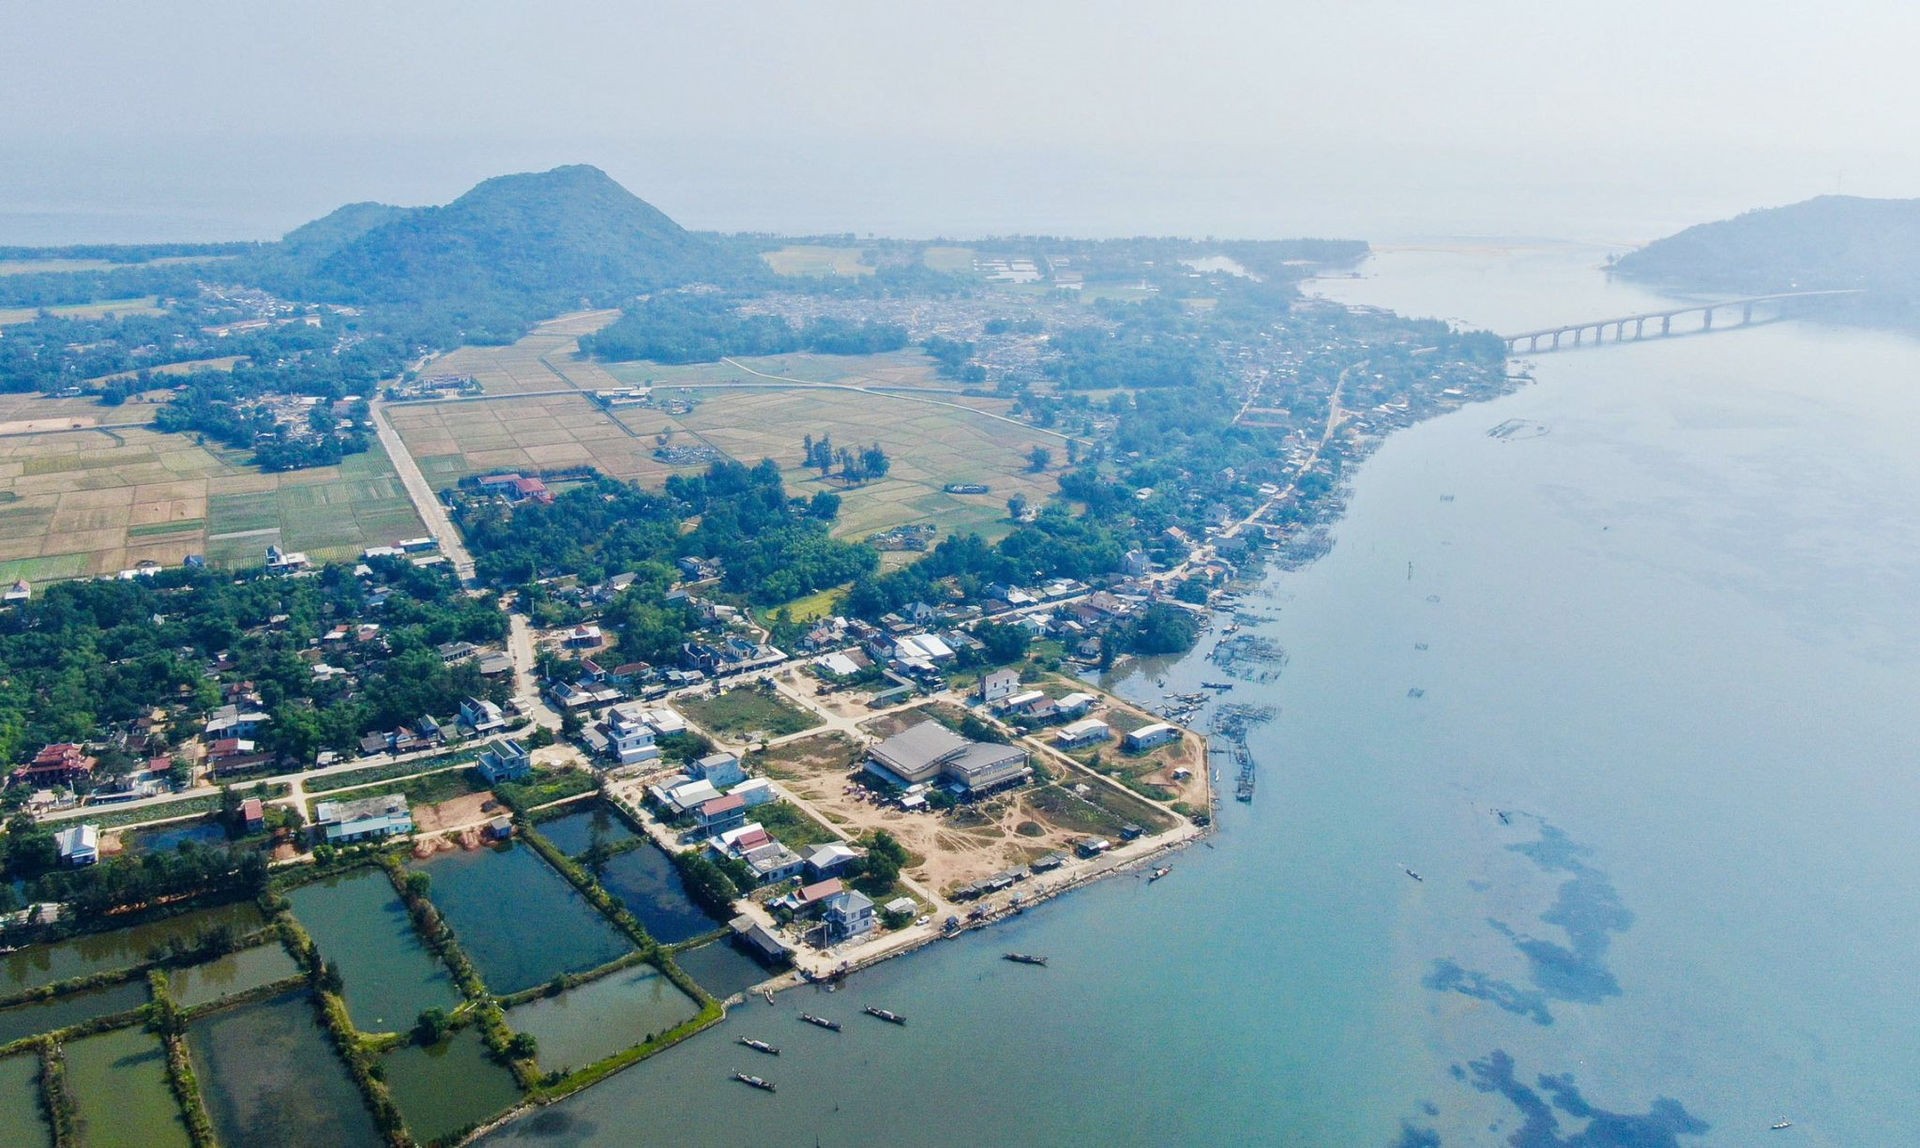 
Dự án khu đô thị sinh thái và nghỉ dưỡng ven biển mới này của Thừa Thiên-Huế sẽ có 5 phân khu. Ảnh minh họa.
